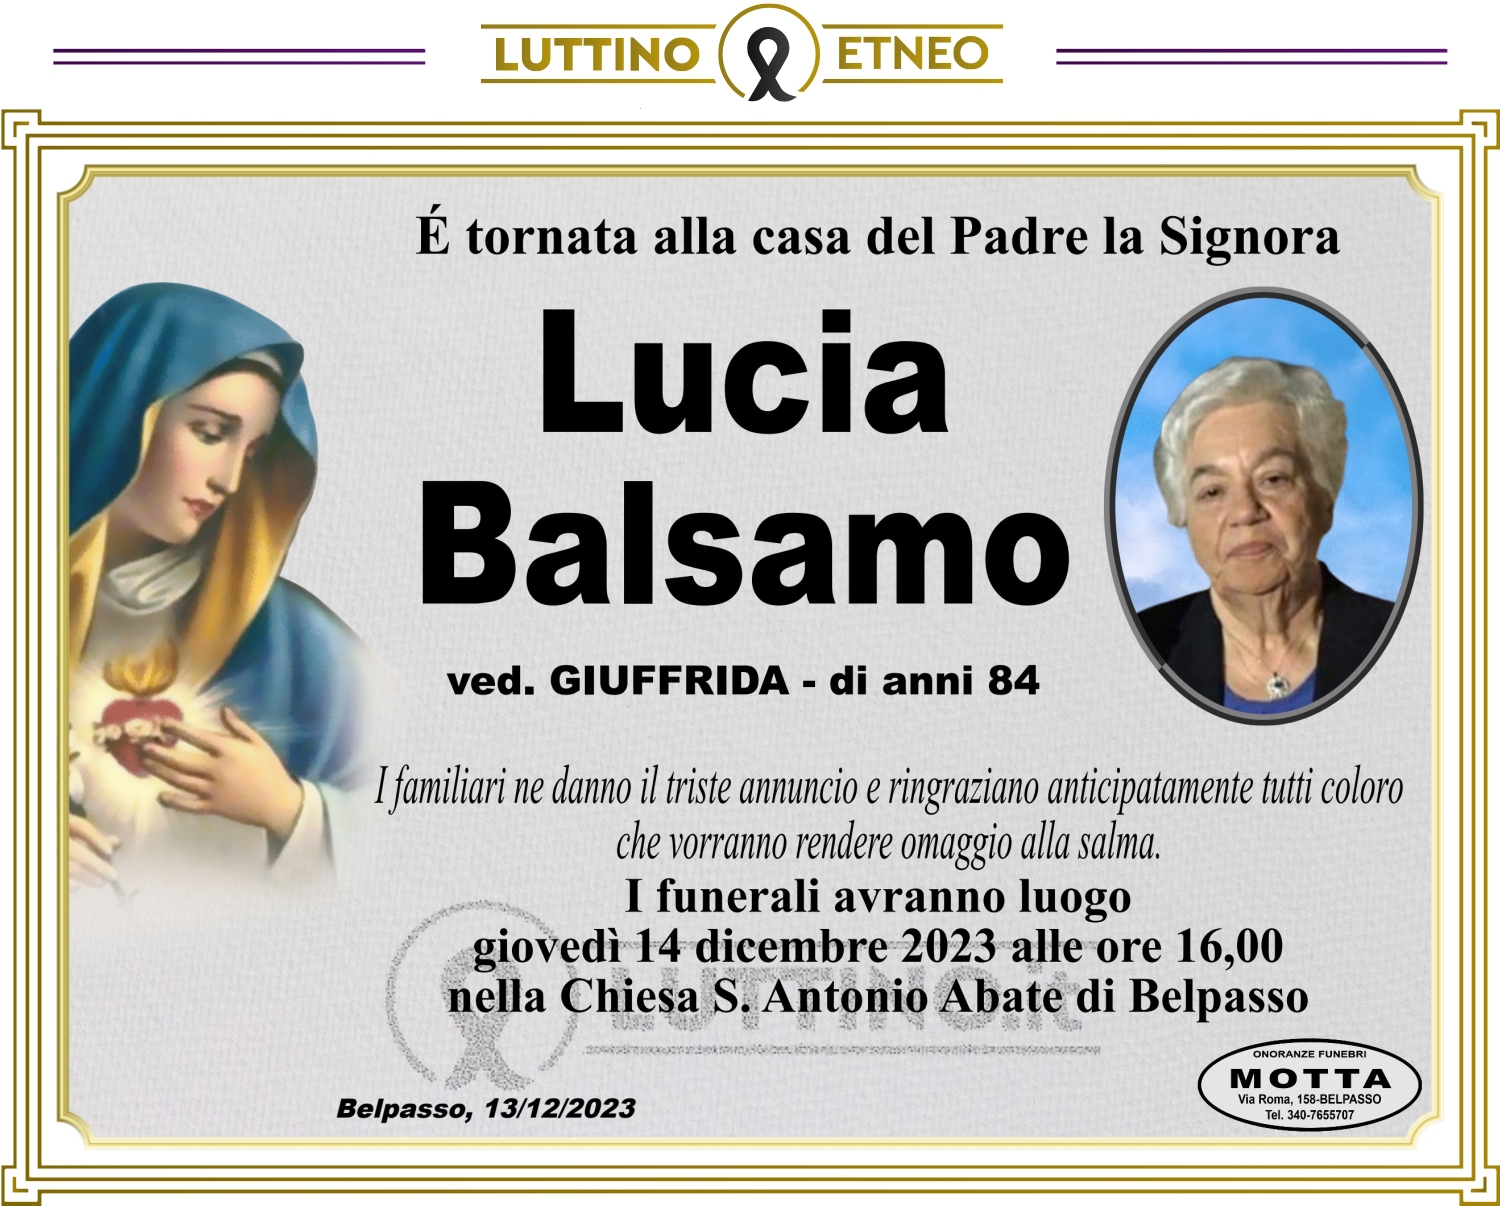 Lucia Balsamo